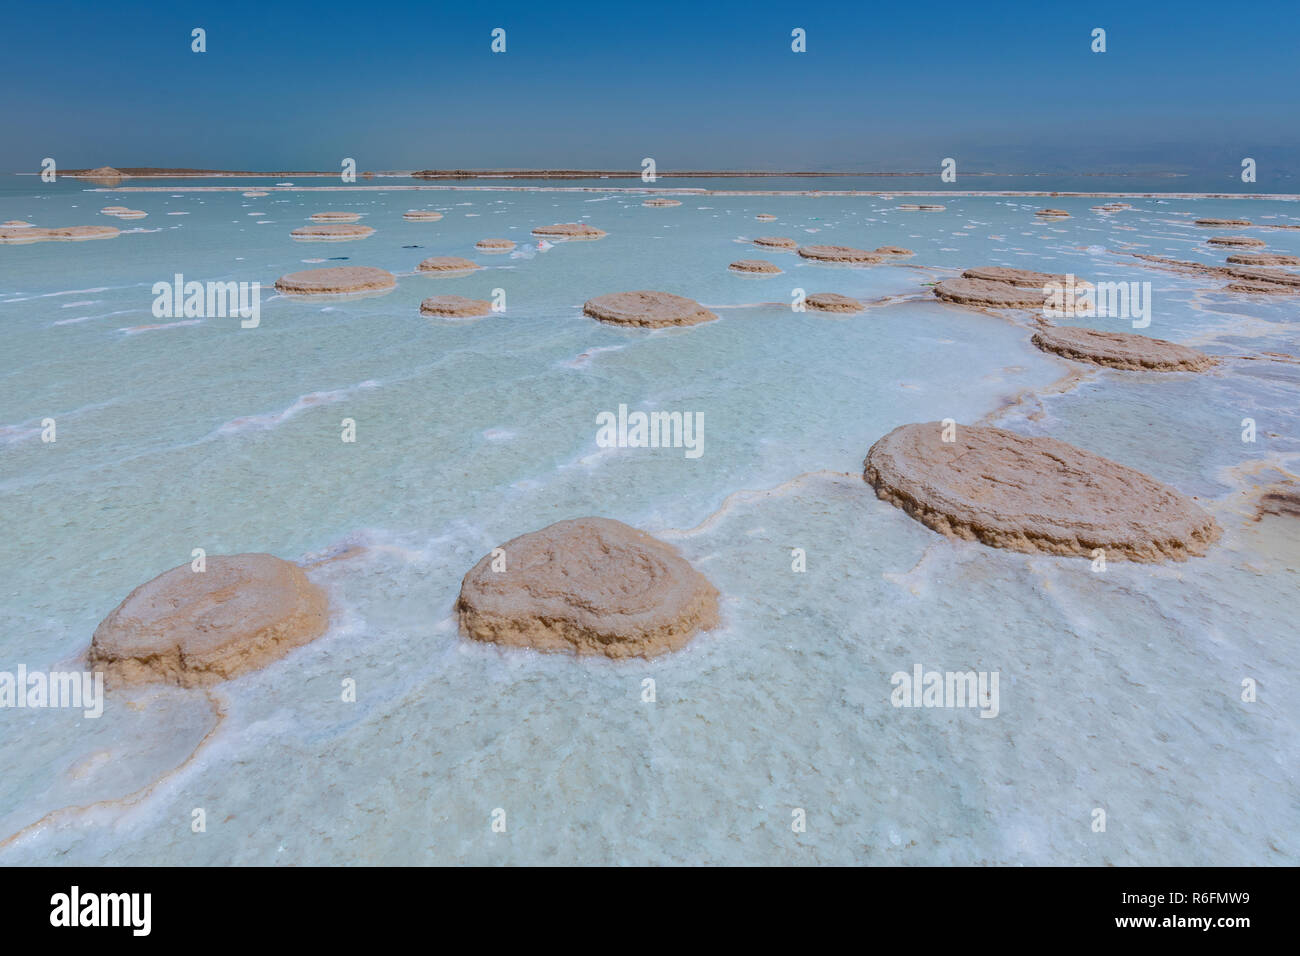 Sale cristallizzato coprire la spiaggia del Mar Morto in Israele Foto Stock